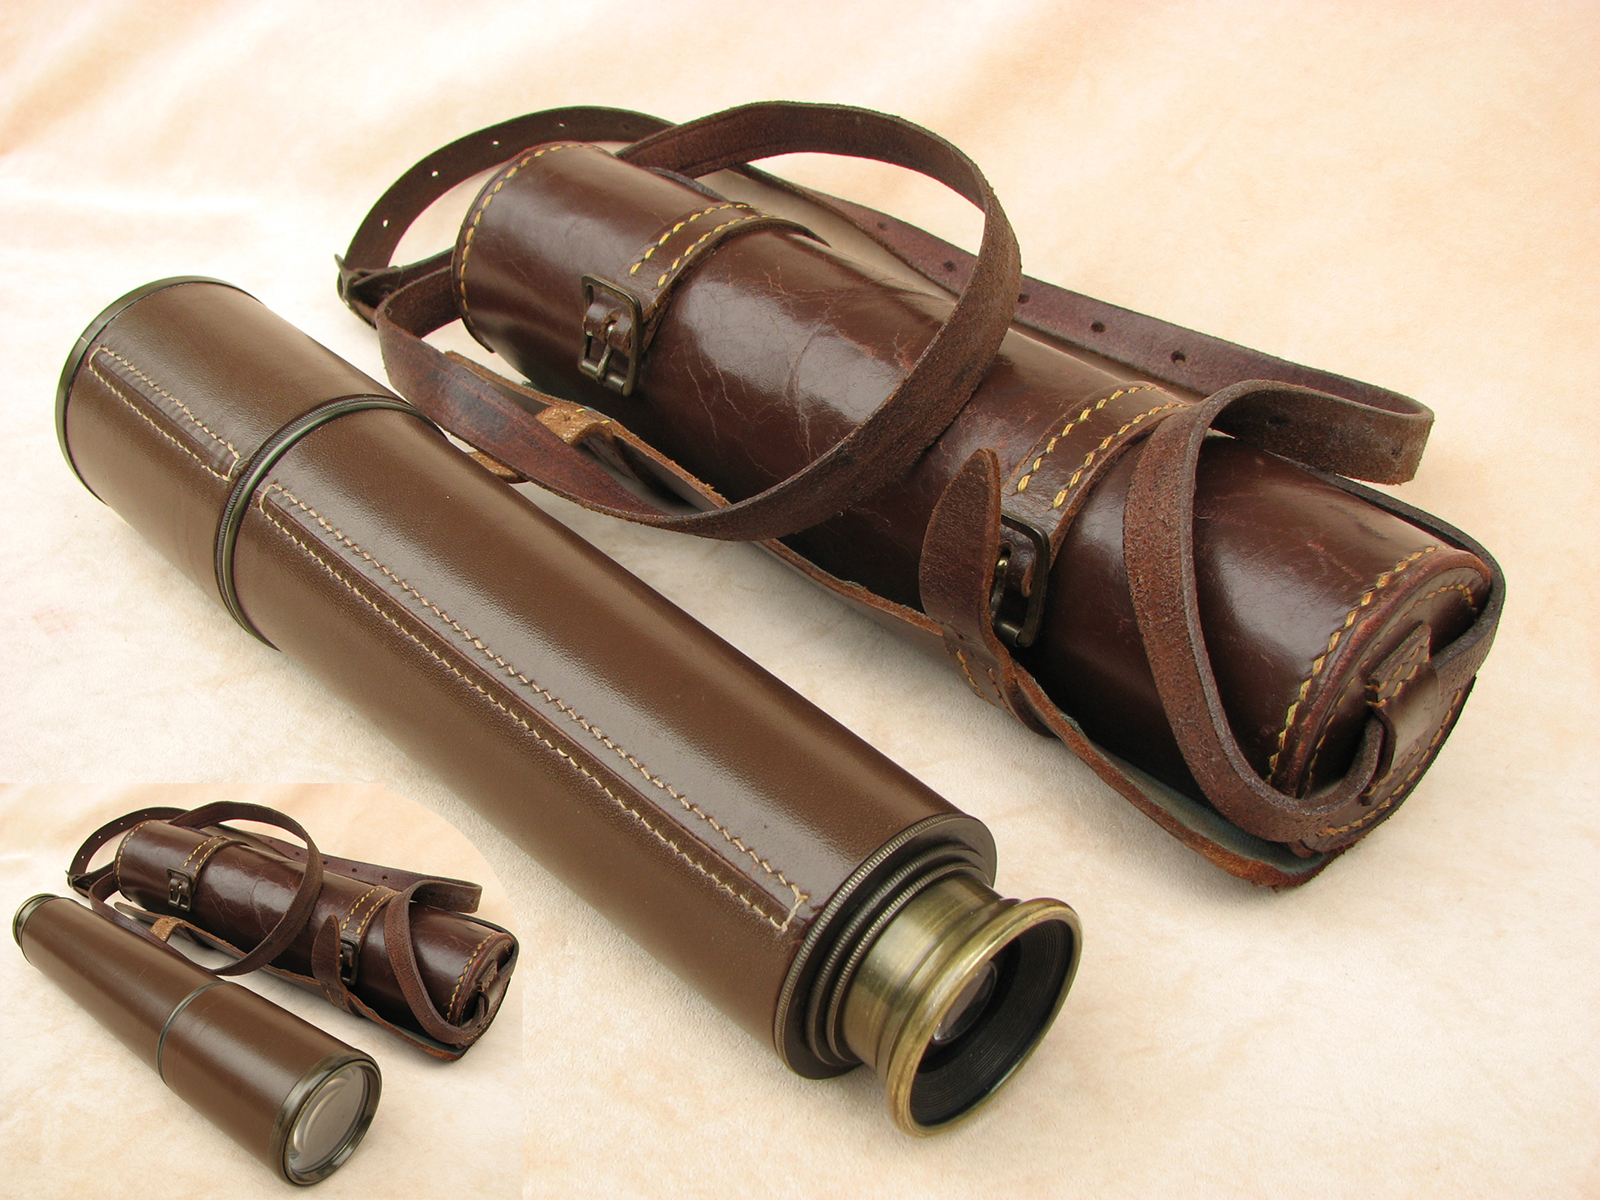 Broadhurst Clarkson 3 draw field telescope in leather wrap case.